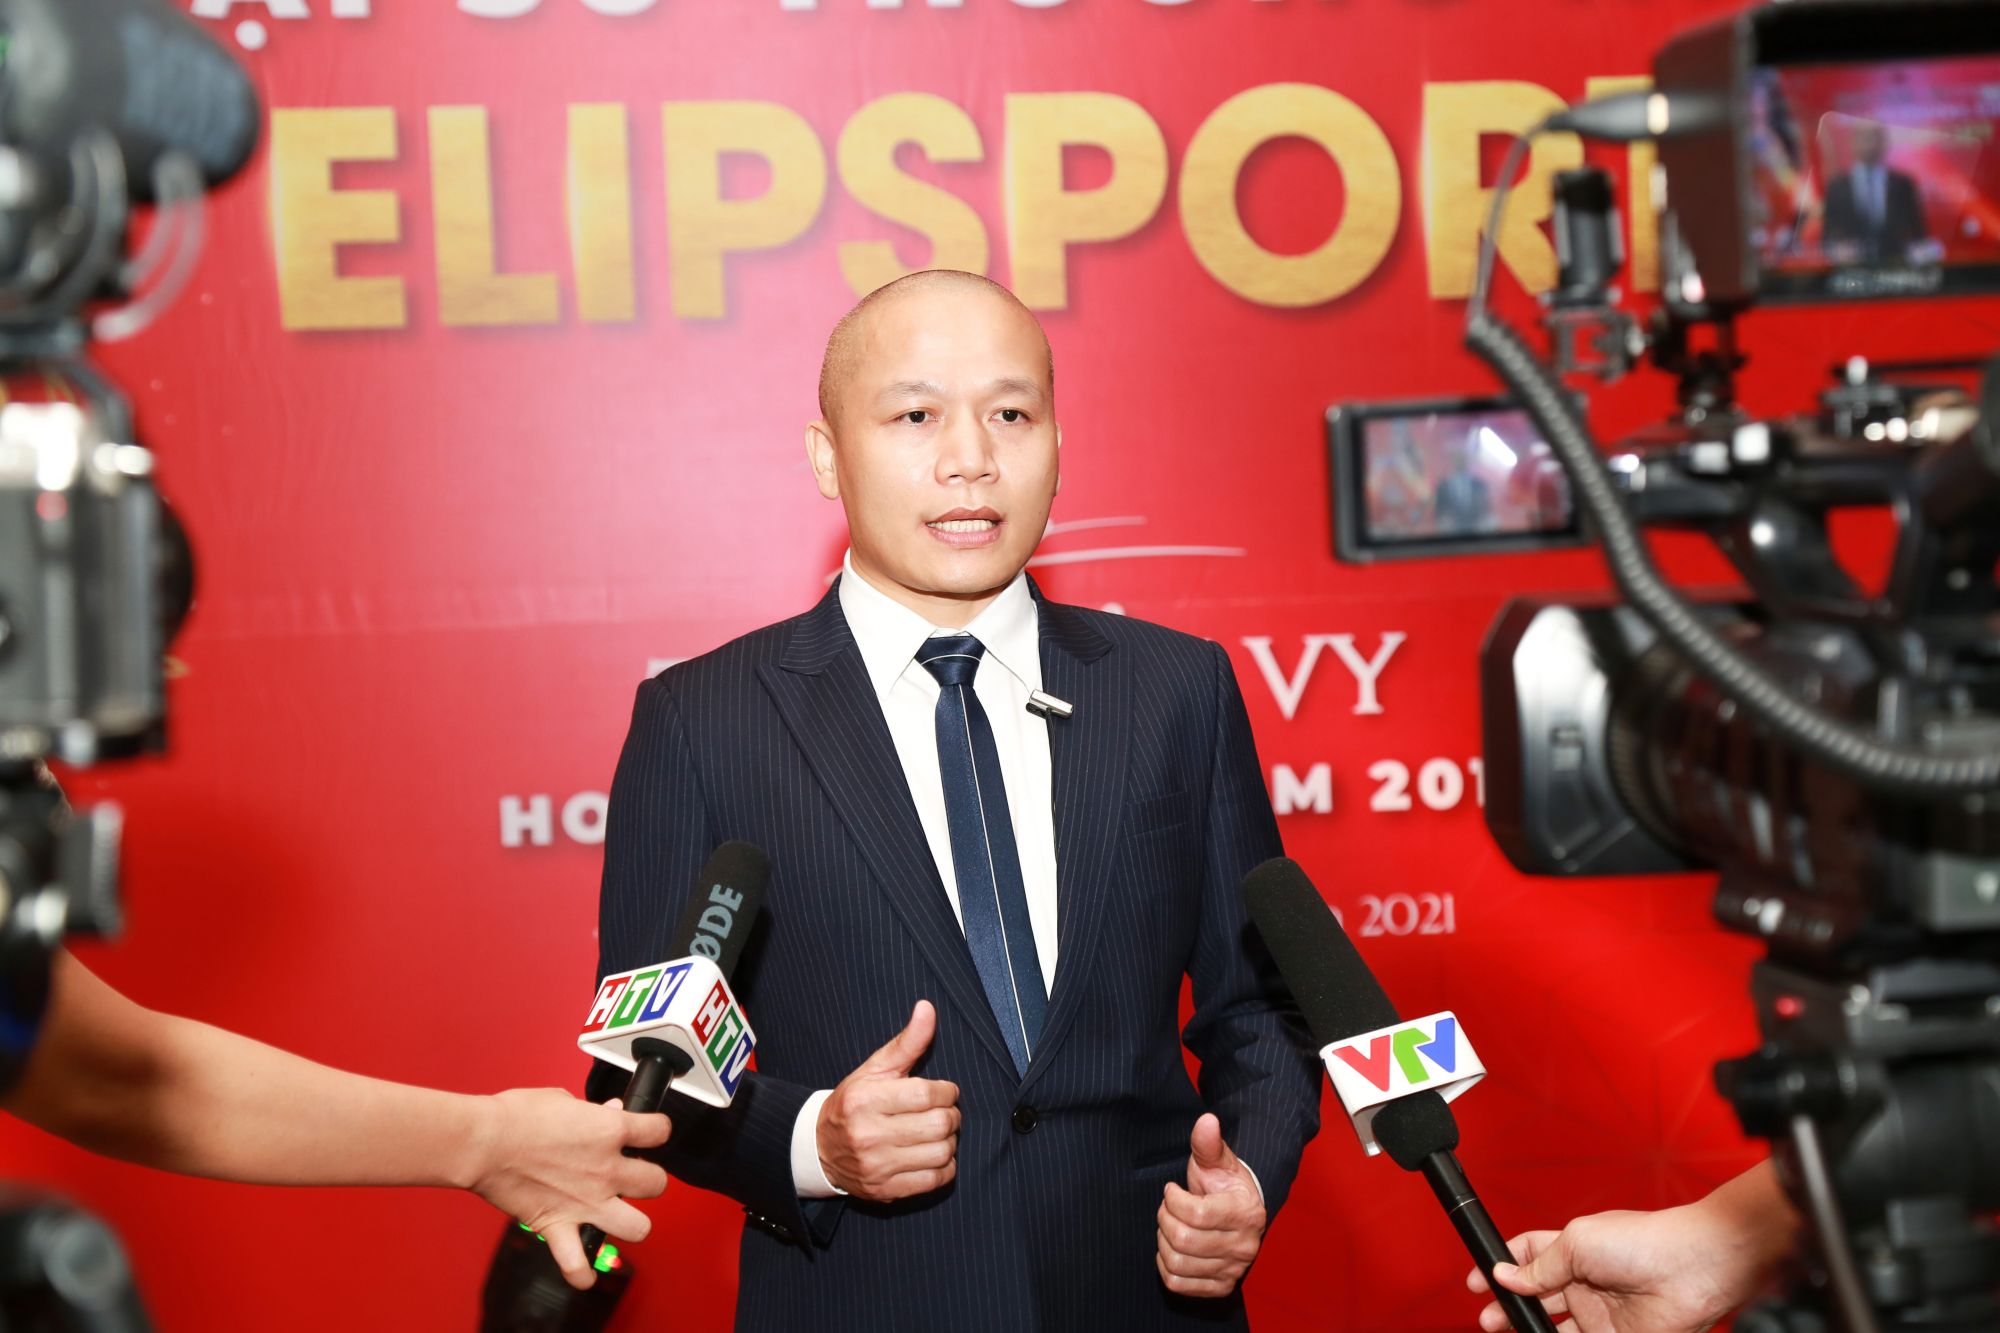 CEO Elipsport - Ông Lê Mạnh Trường